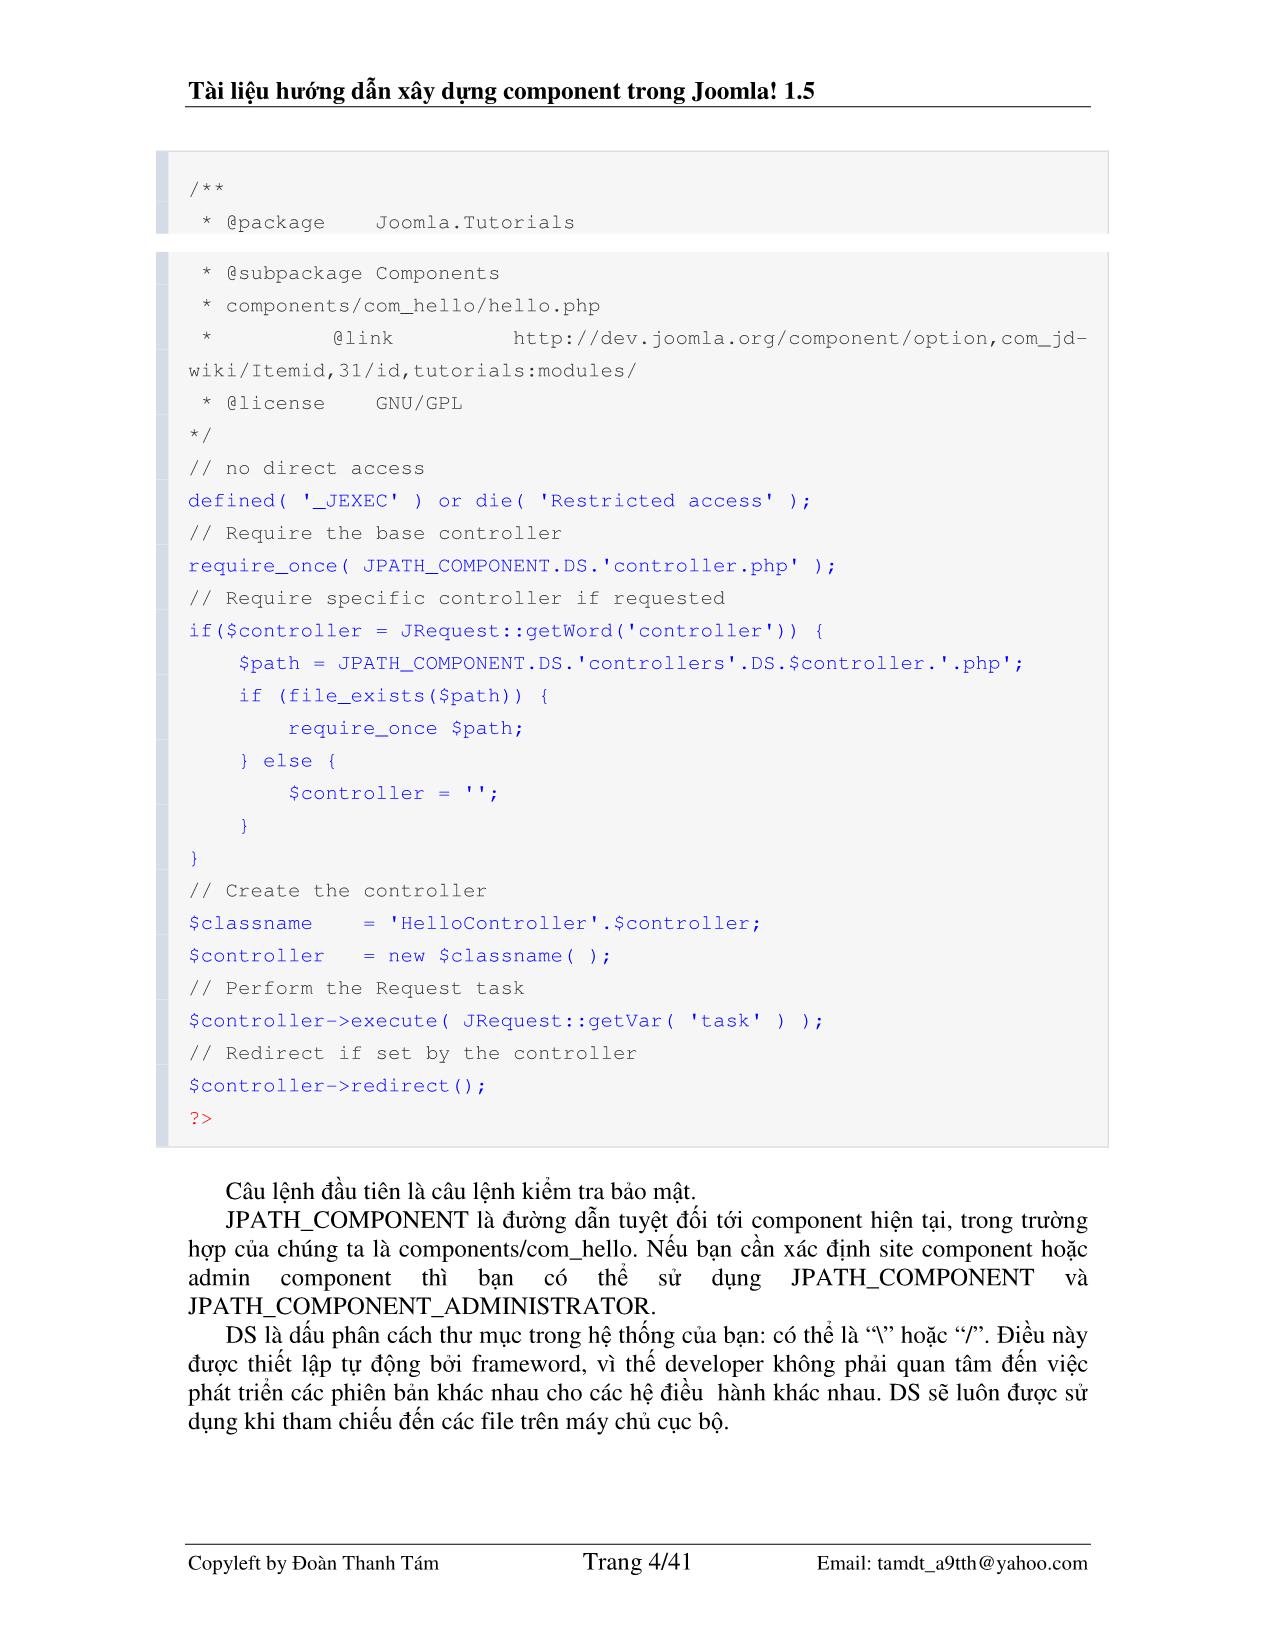 Tài liệu hướng dẫn xây dựng component trong Joomla! 1.5 trang 4